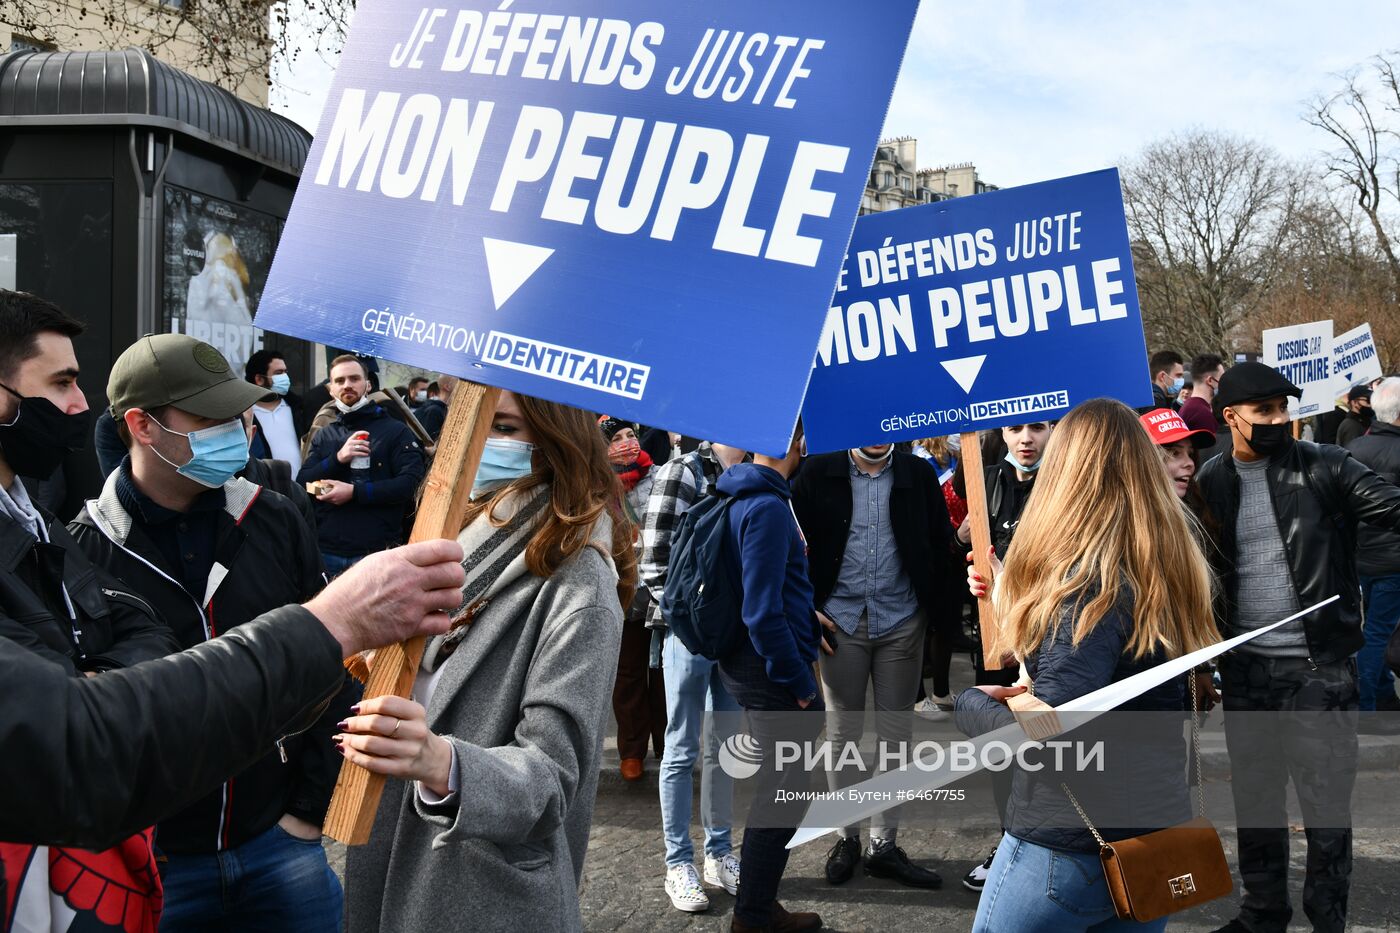 Акция протеста радикалов в Париже